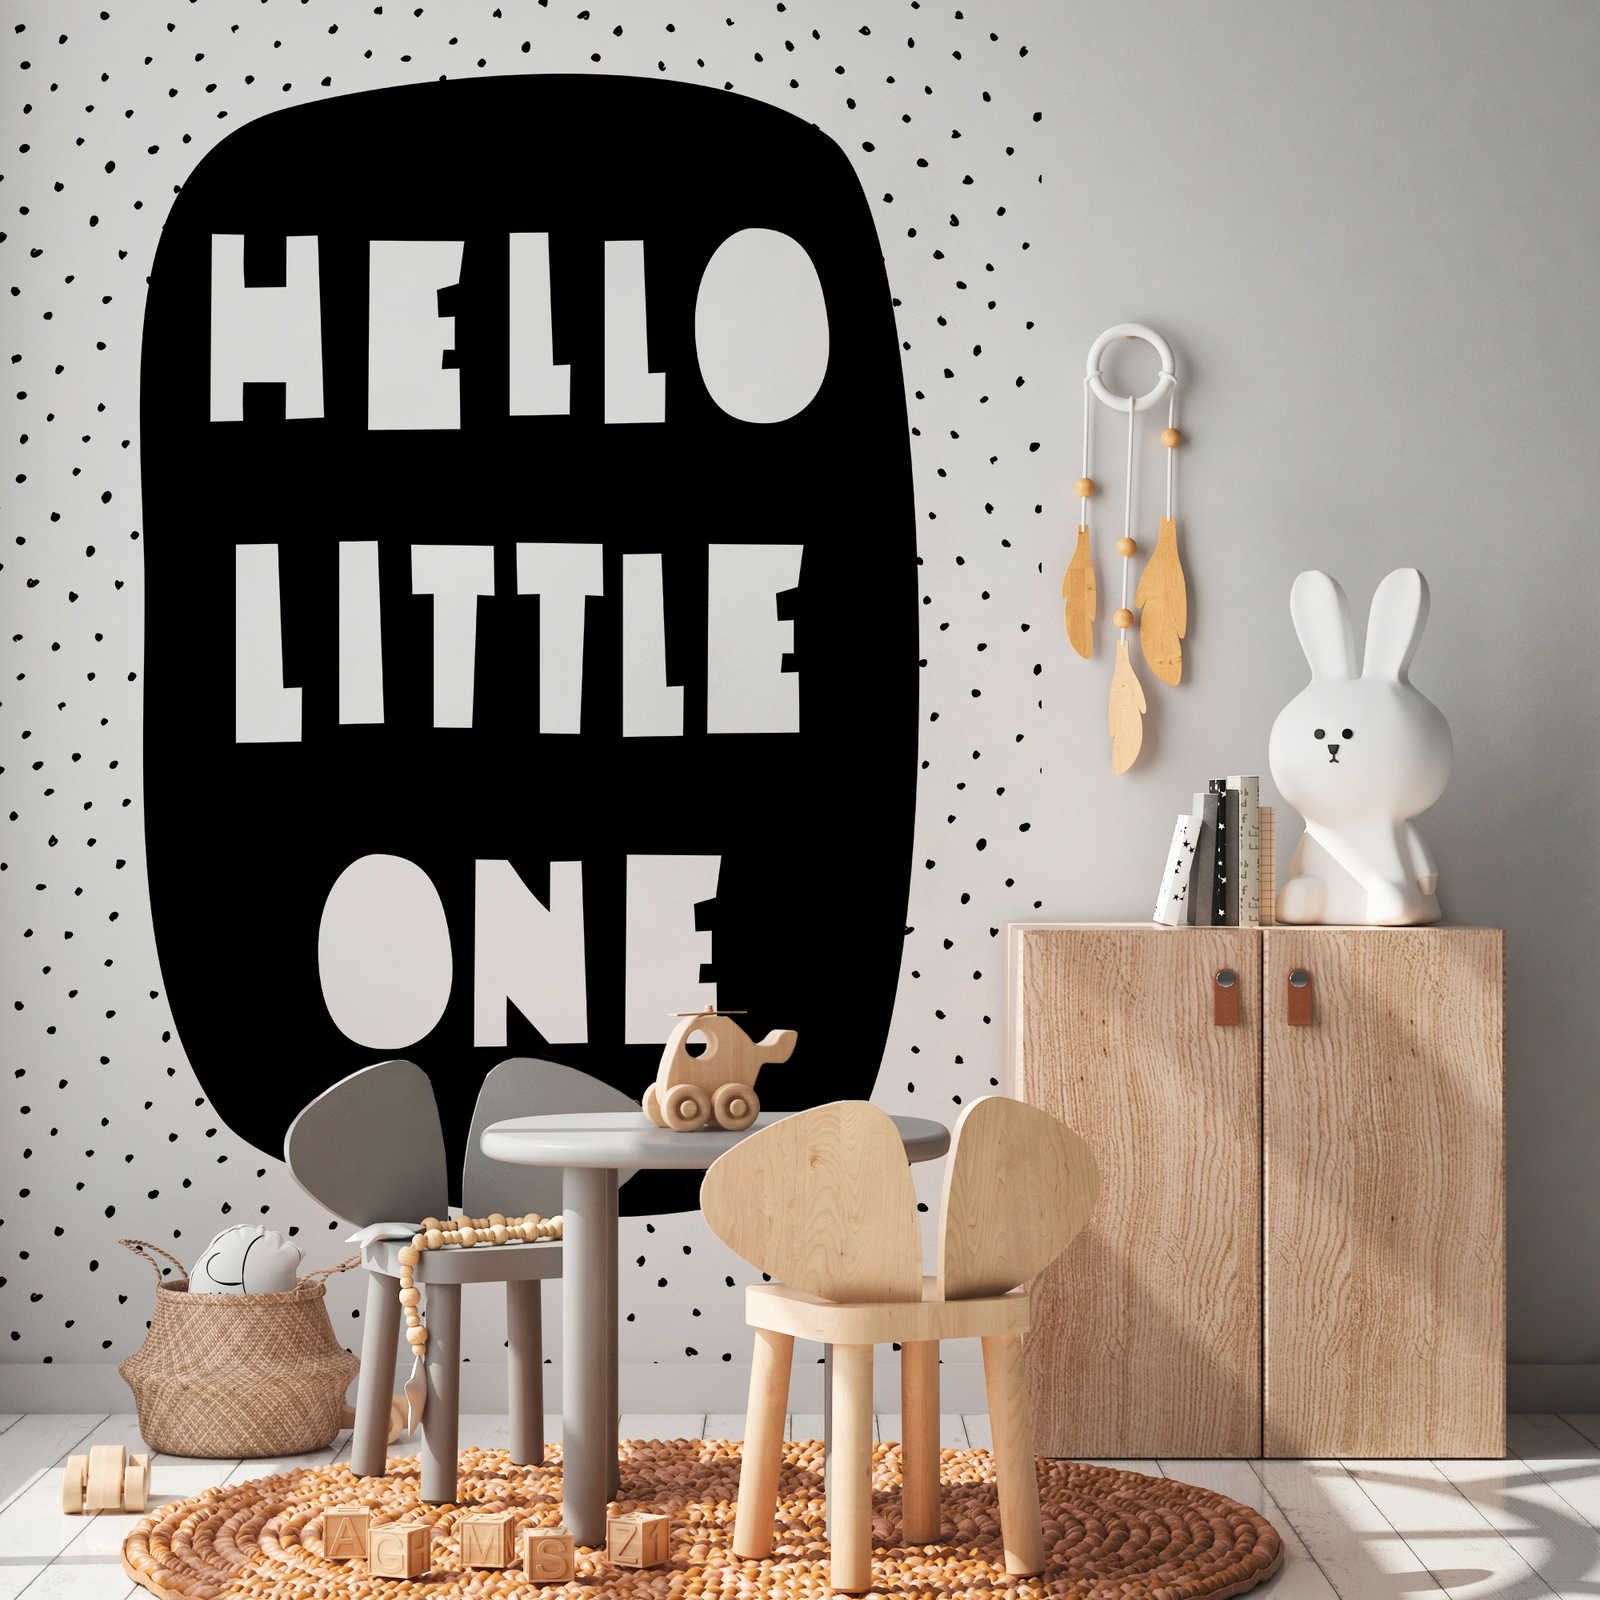 Fototapete fürs Kinderzimmer mit Schriftzug "Hello Little One" – Glattes & perlmutt-schimmerndes Vlies
